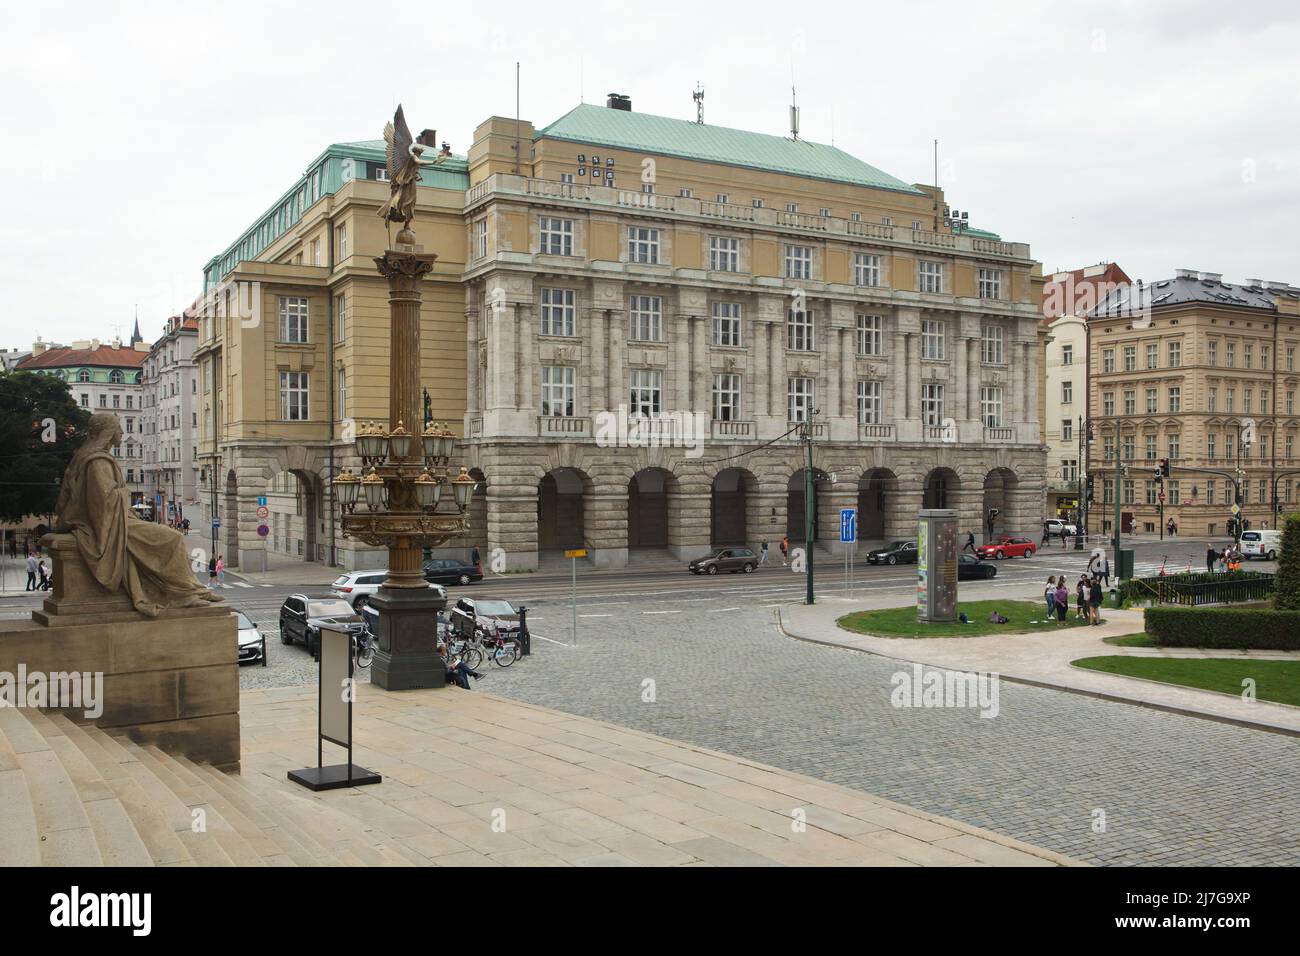 Edificio della Facoltà di lettere (Filozofická fakulta) dell'Università Charles (Univerzita Karlova) a Praga, Repubblica Ceca. L'edificio progettato dall'architetto ceco Josef Sakař è stato costruito tra il 1924 e il 1930. Foto Stock